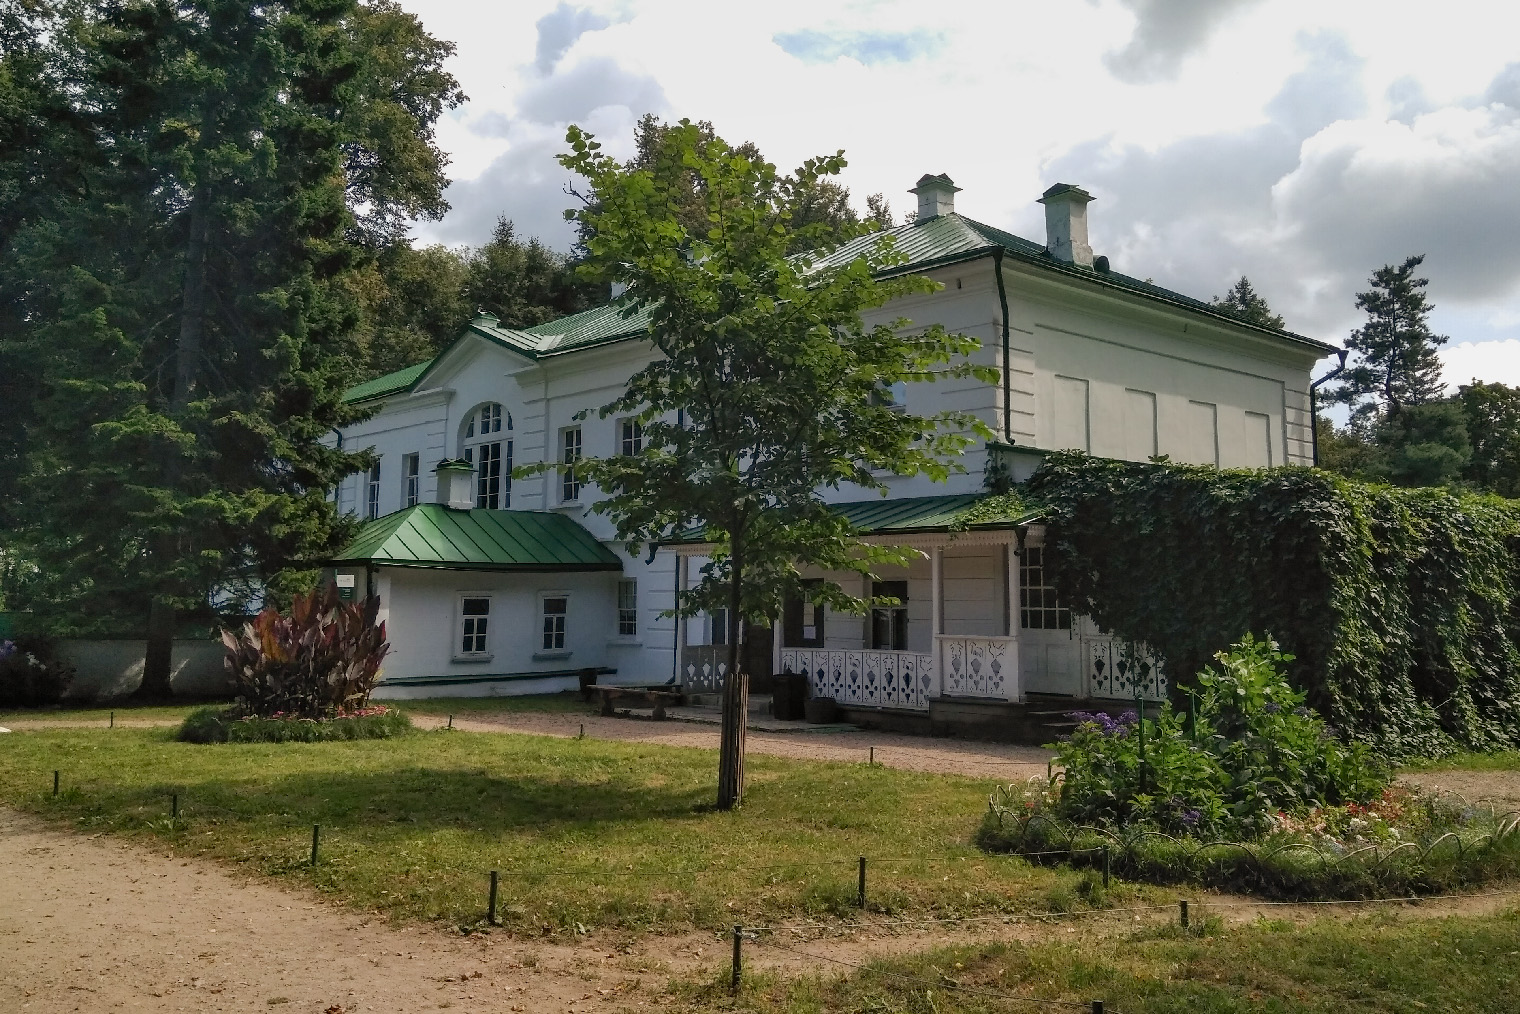 Дом Льва Толстого, где он жил с семьей. Террасу пристроили позже, в 1892 году